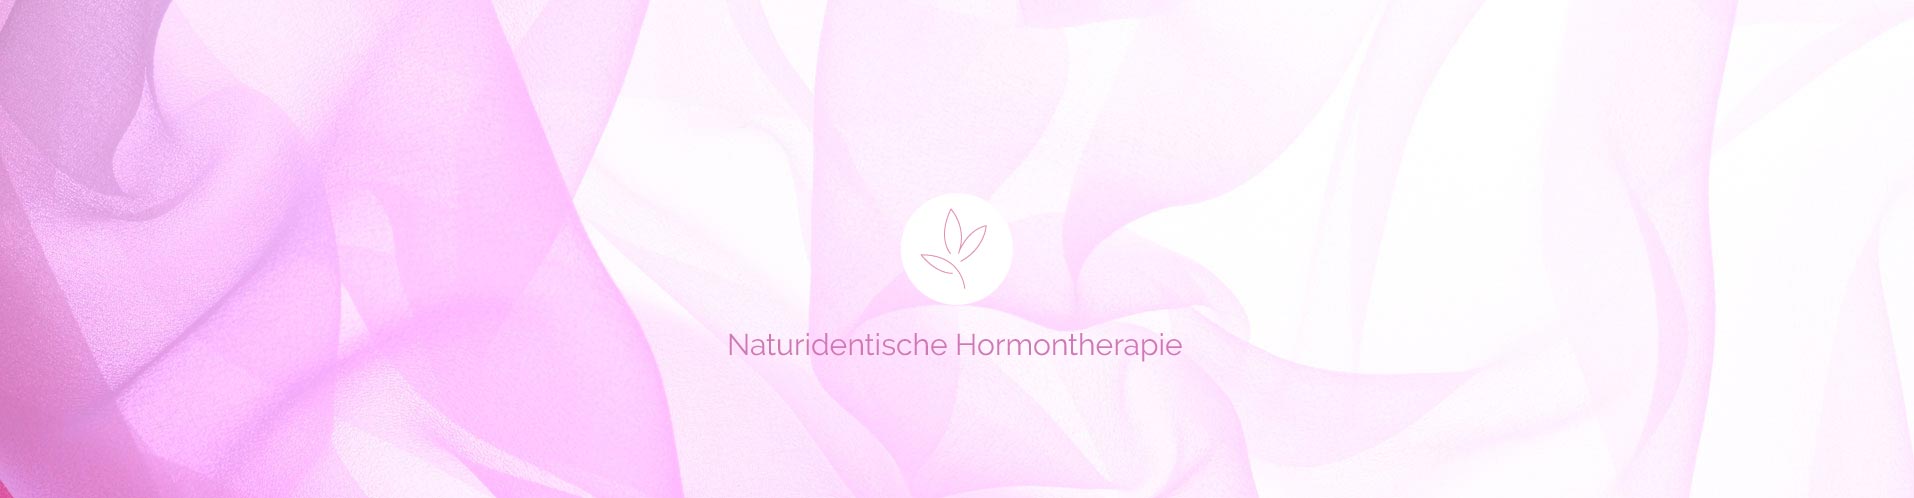 Naturidentische Hormontherapie, sanft – effektiv – frei von Nebenwirkungen